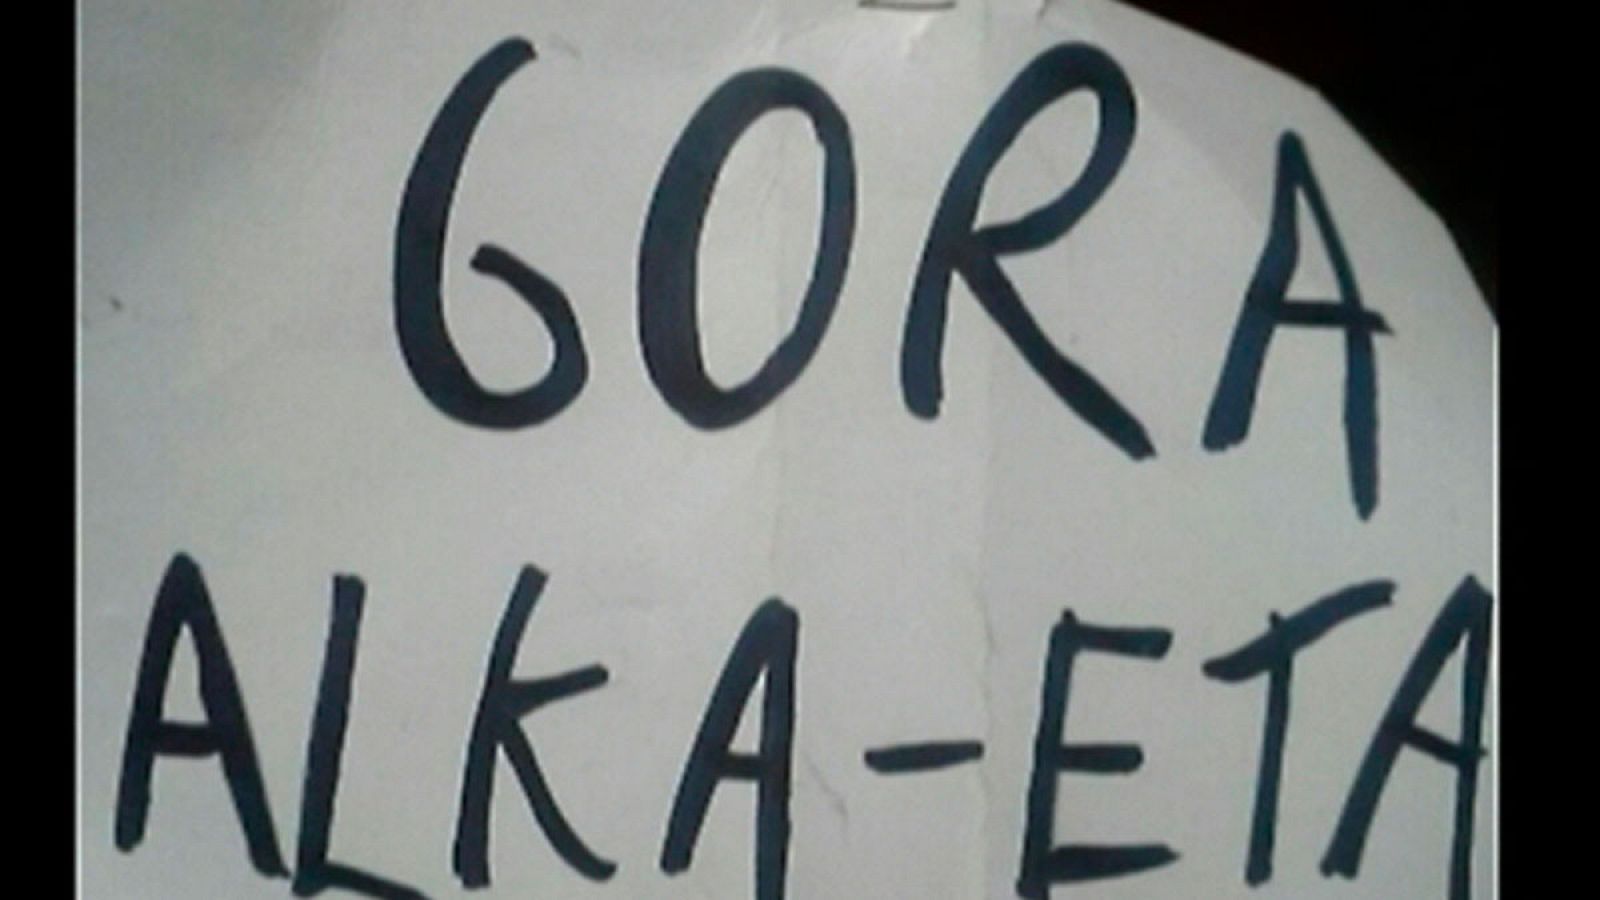 Detenidos dos actores por mostrar una pancarta con 'Gora alka-ETA' dentro de los actos oficiales del Carnaval de Madrid